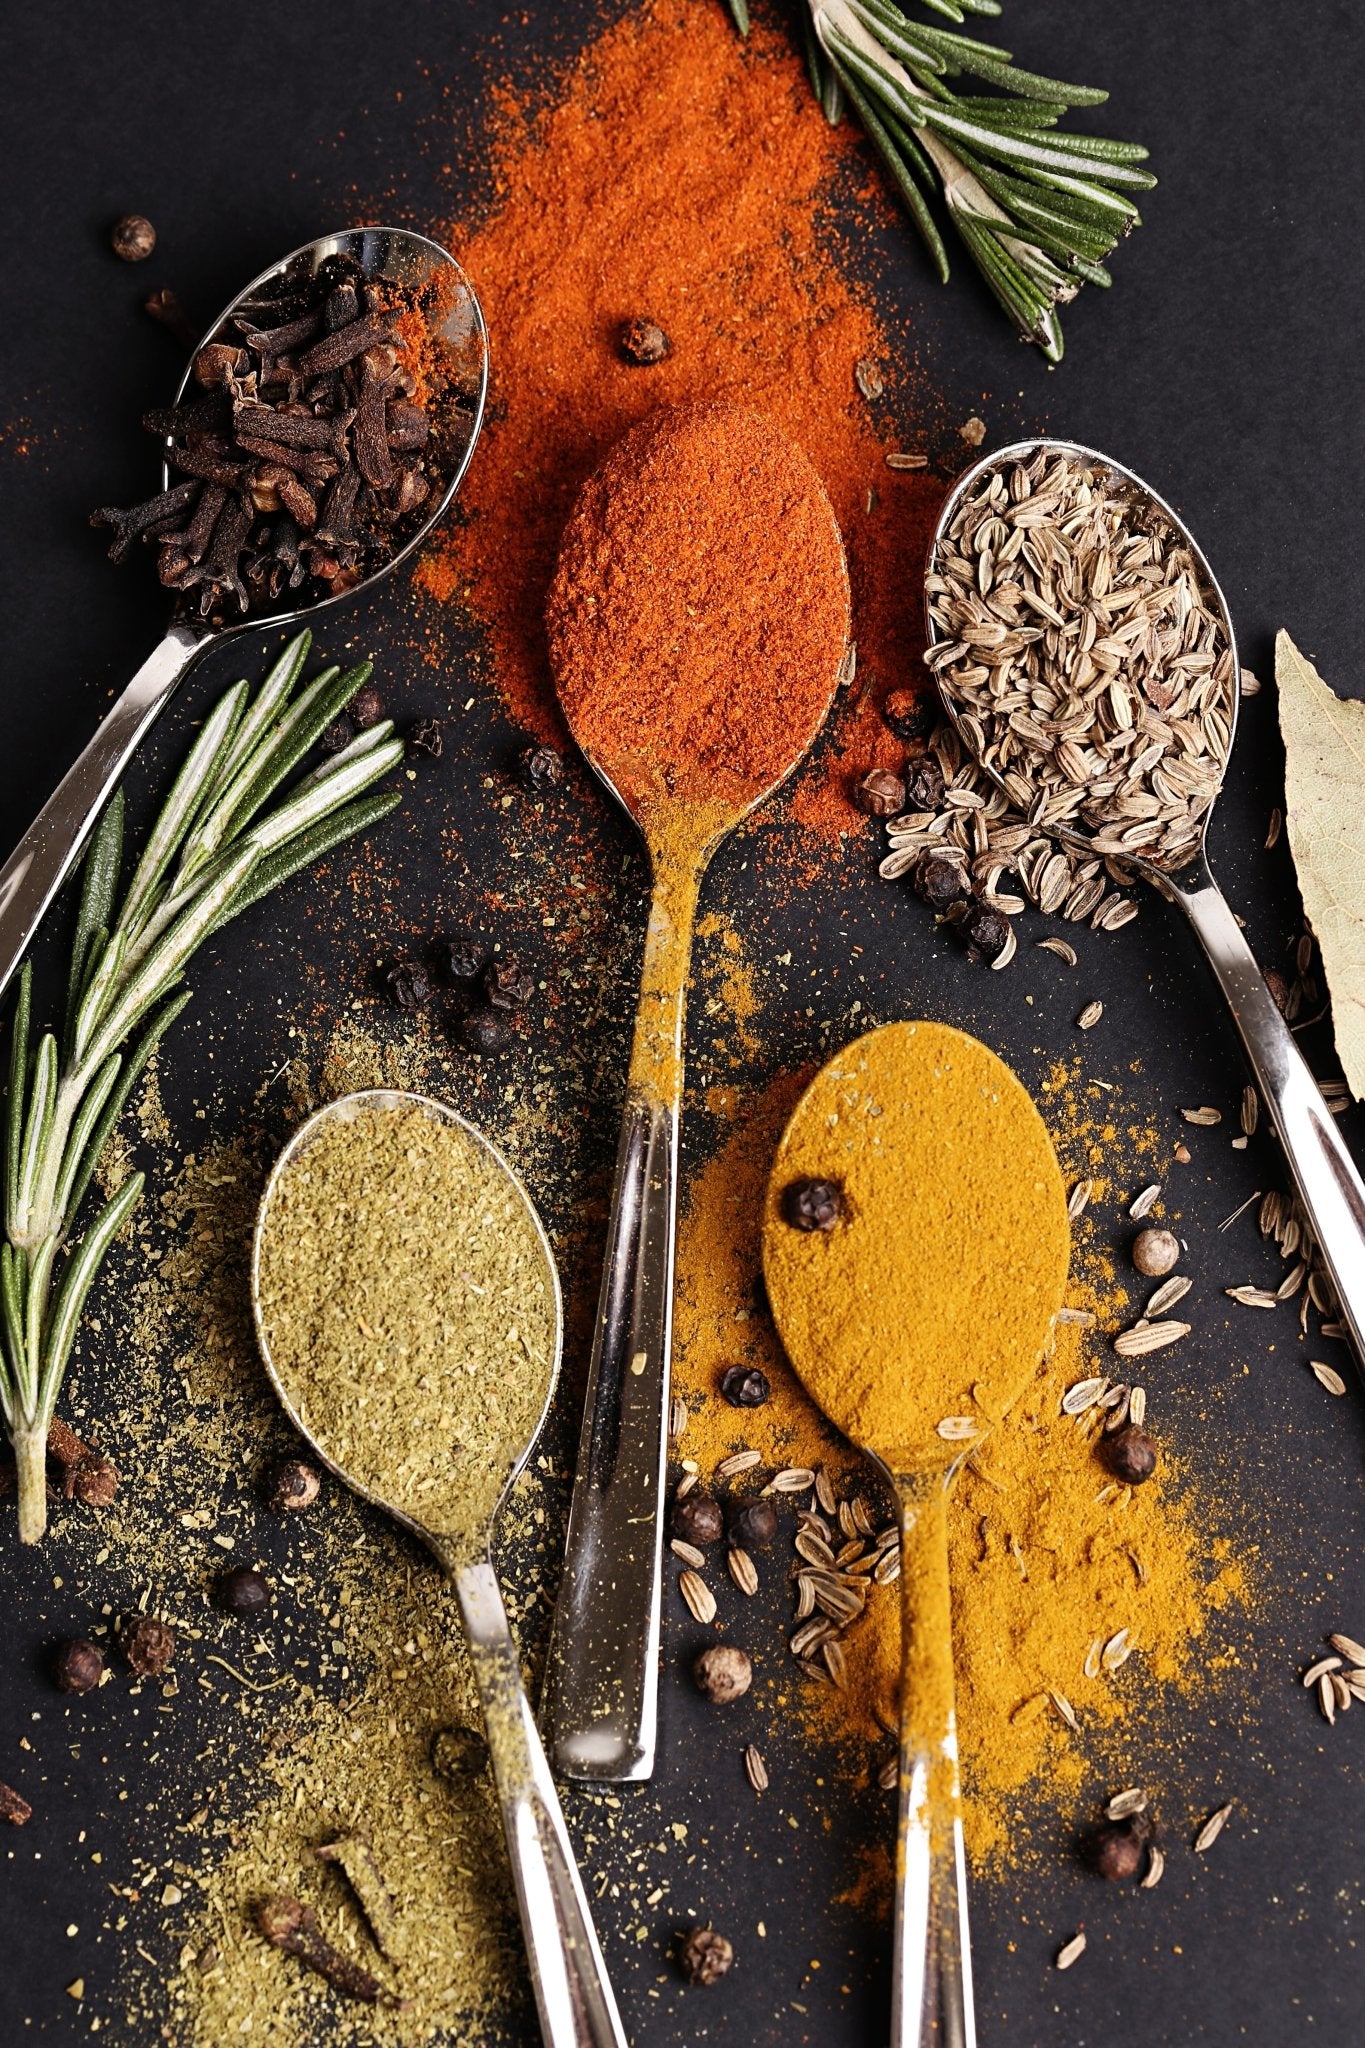 Spices - بهارات و عطارة السعيد